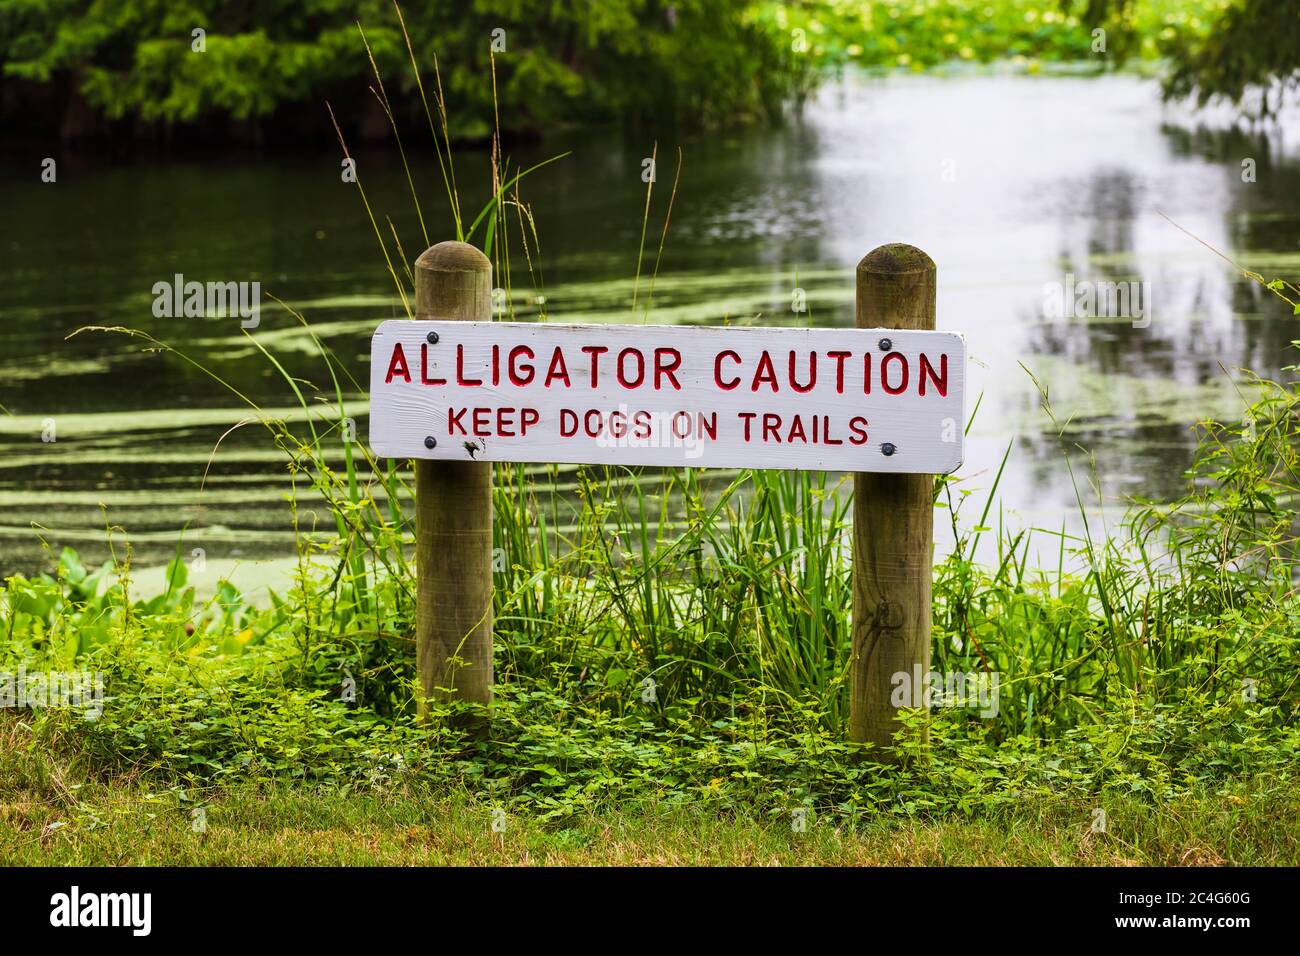 Signe d'avertissement concernant les alligators avertissant les visiteurs de la sécurité des animaux Banque D'Images